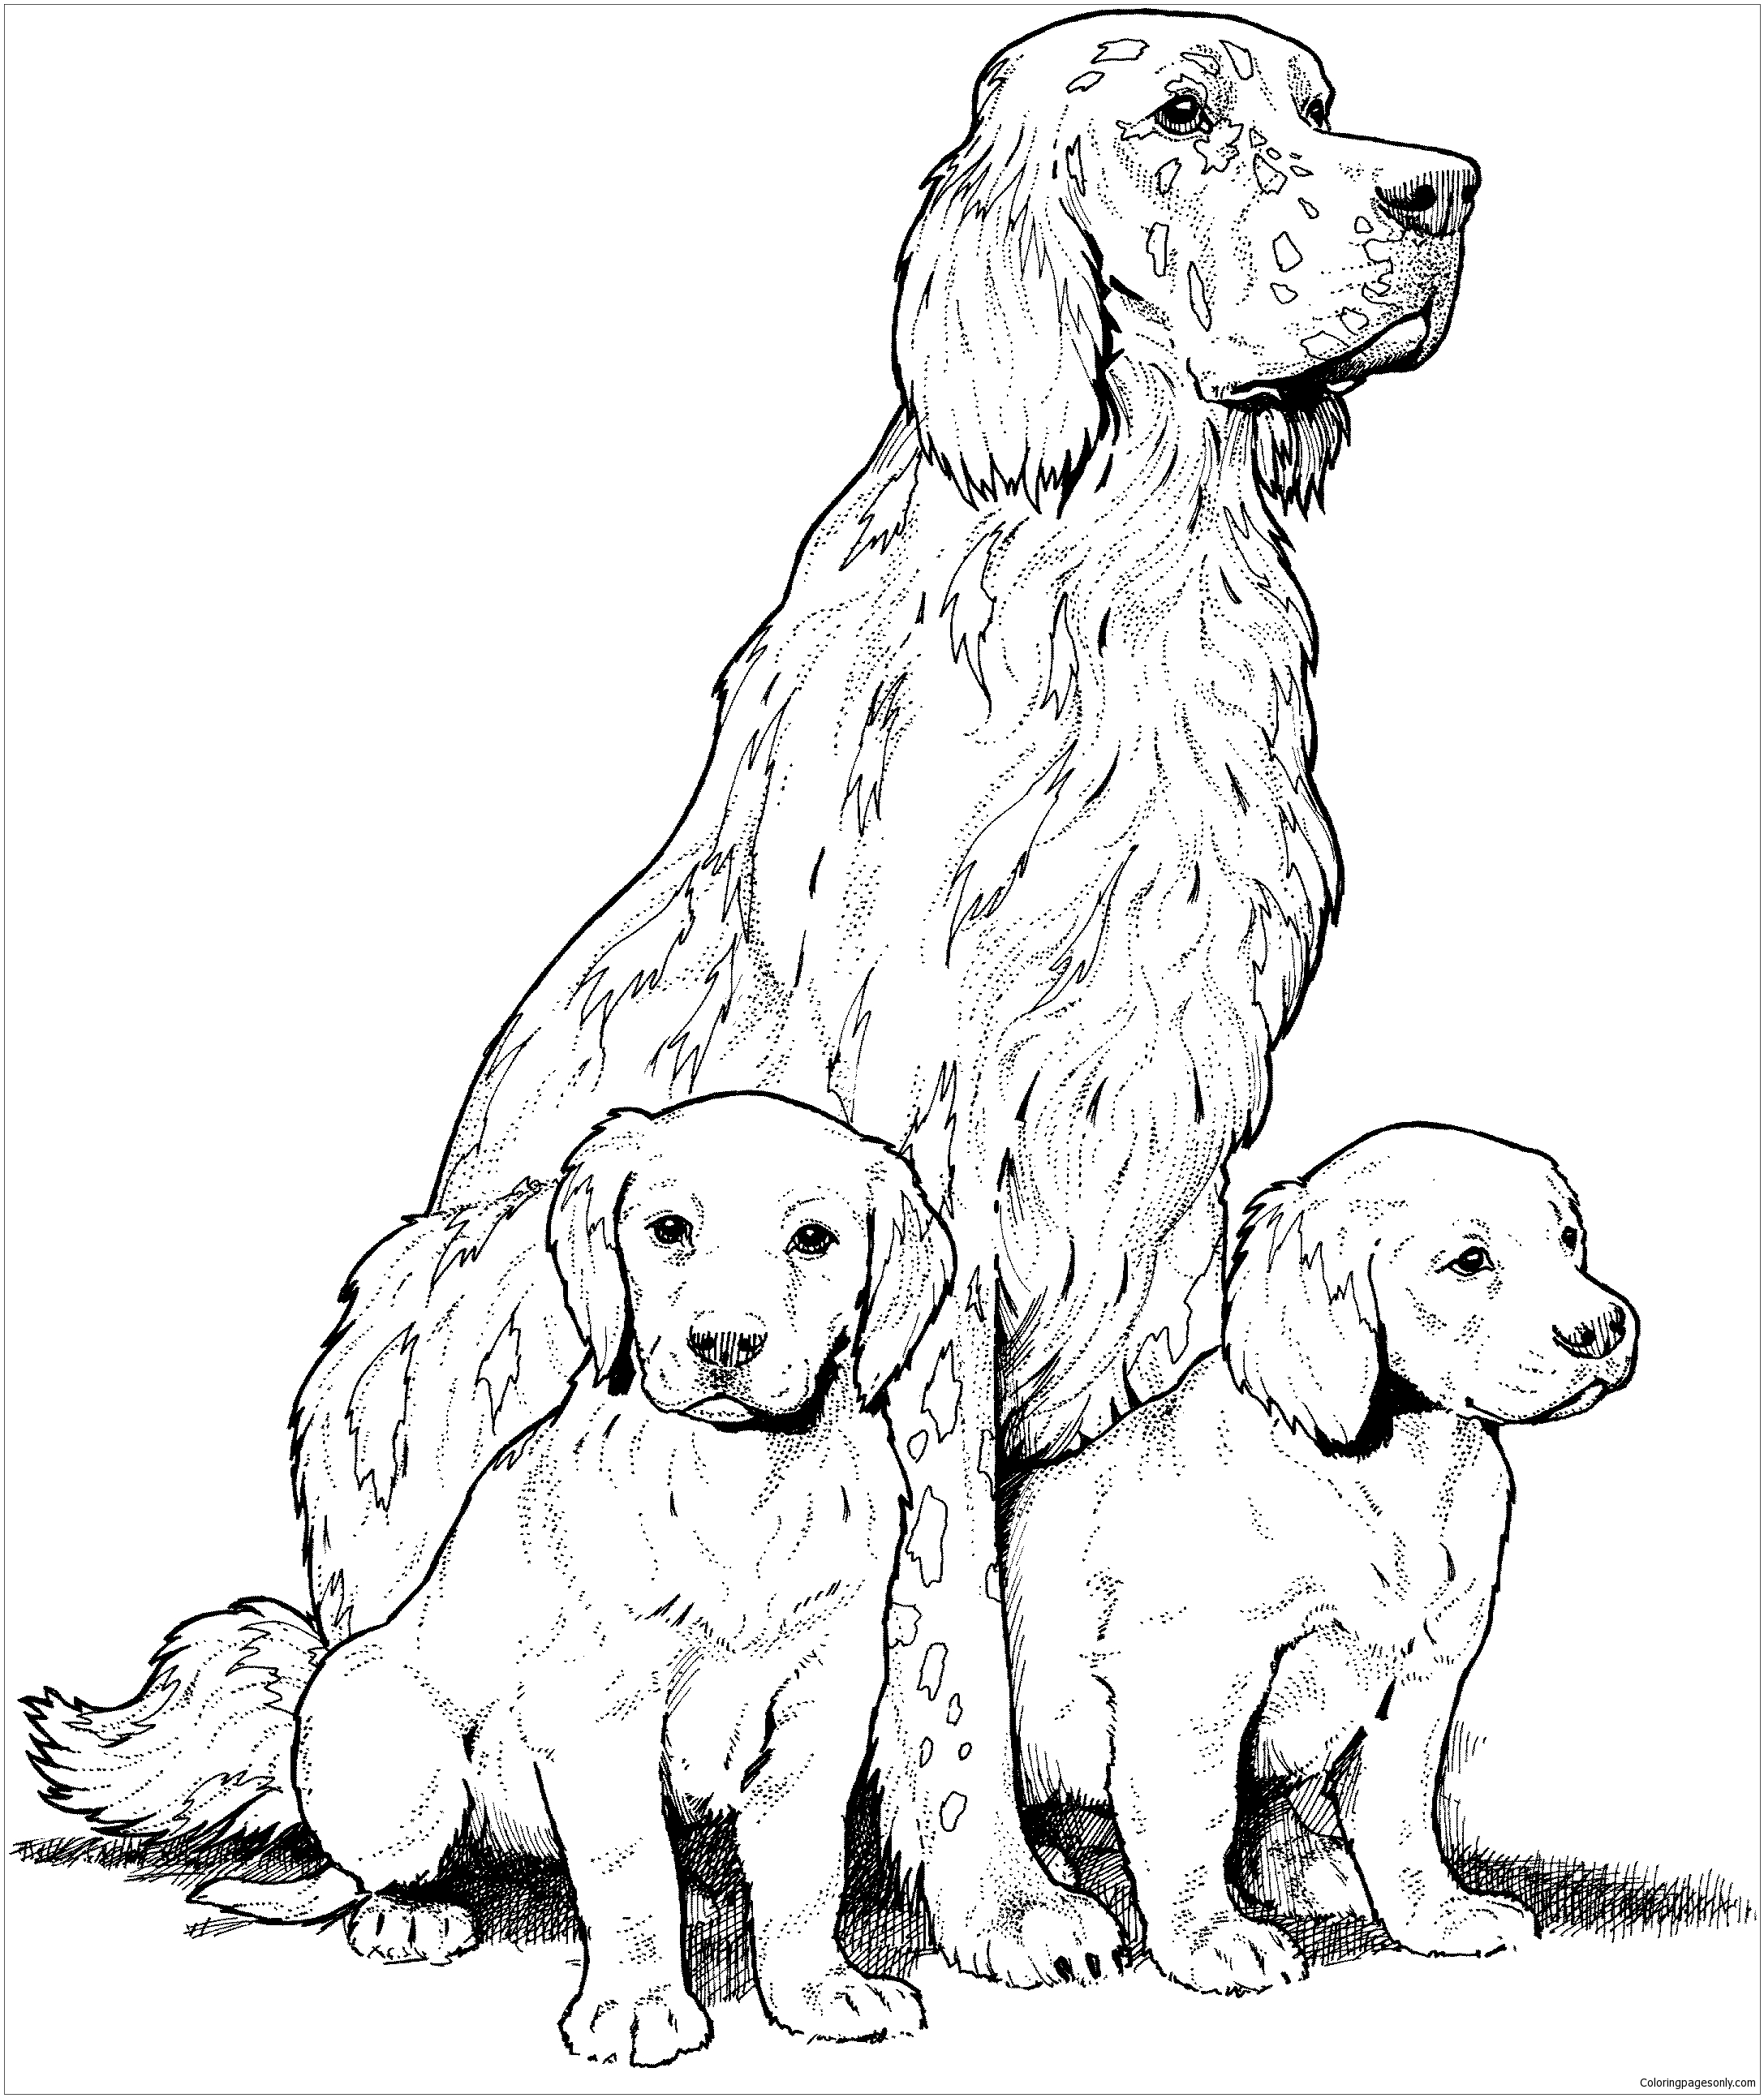 100 Desenhos de Cachorros para Colorir e Imprimir